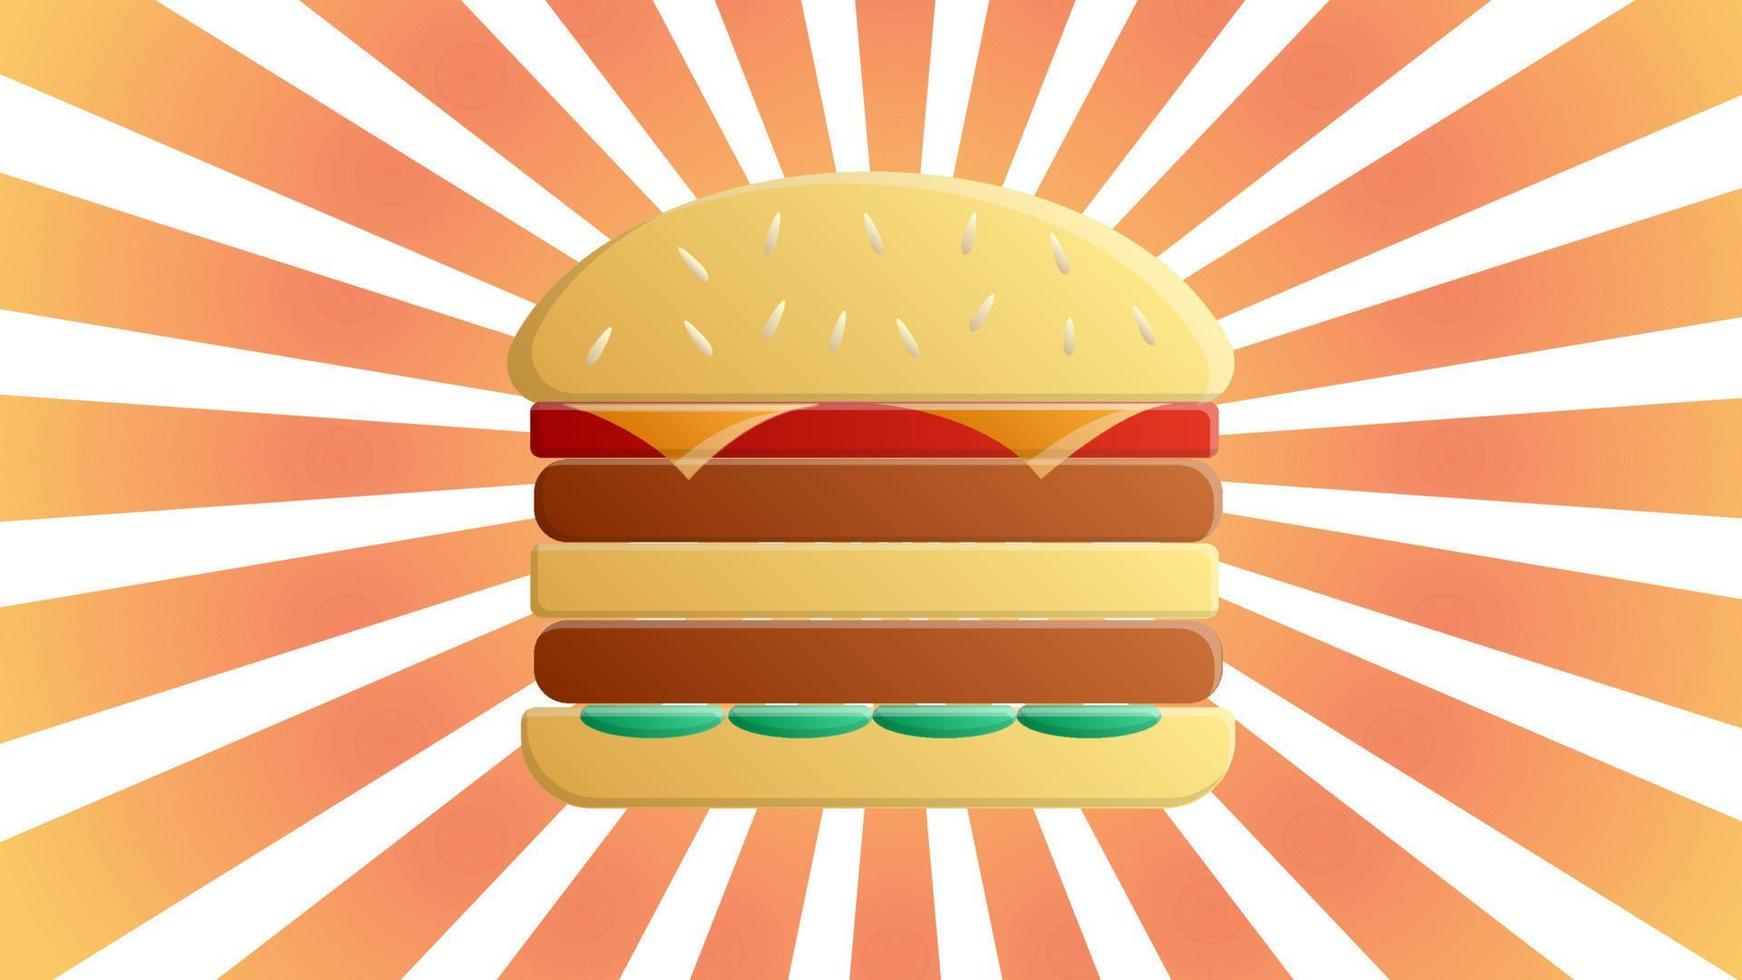 cartaz de publicidade de refeição de fast food de hambúrguer com raios e inscrição de letras. delicioso hambúrguer ou cheeseburger promocional vetor